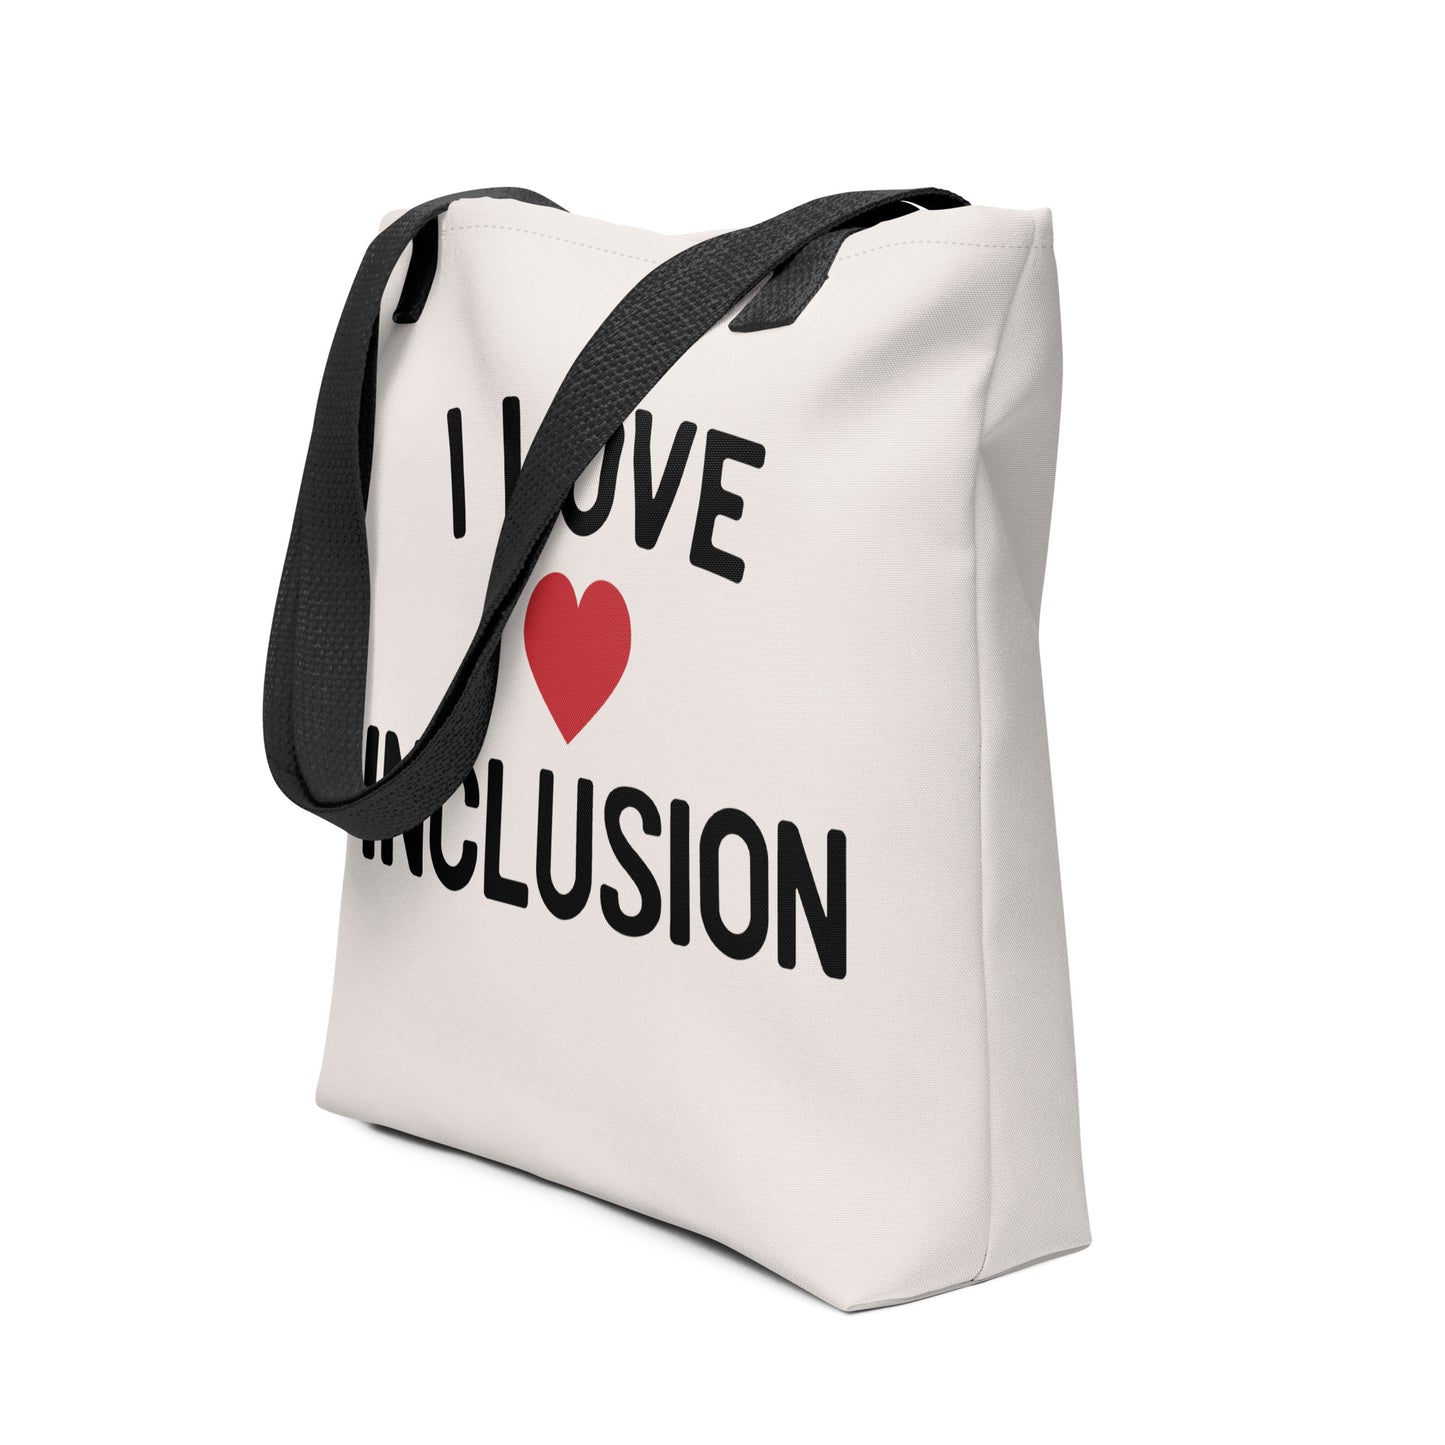 I Love Inclusion | Tote